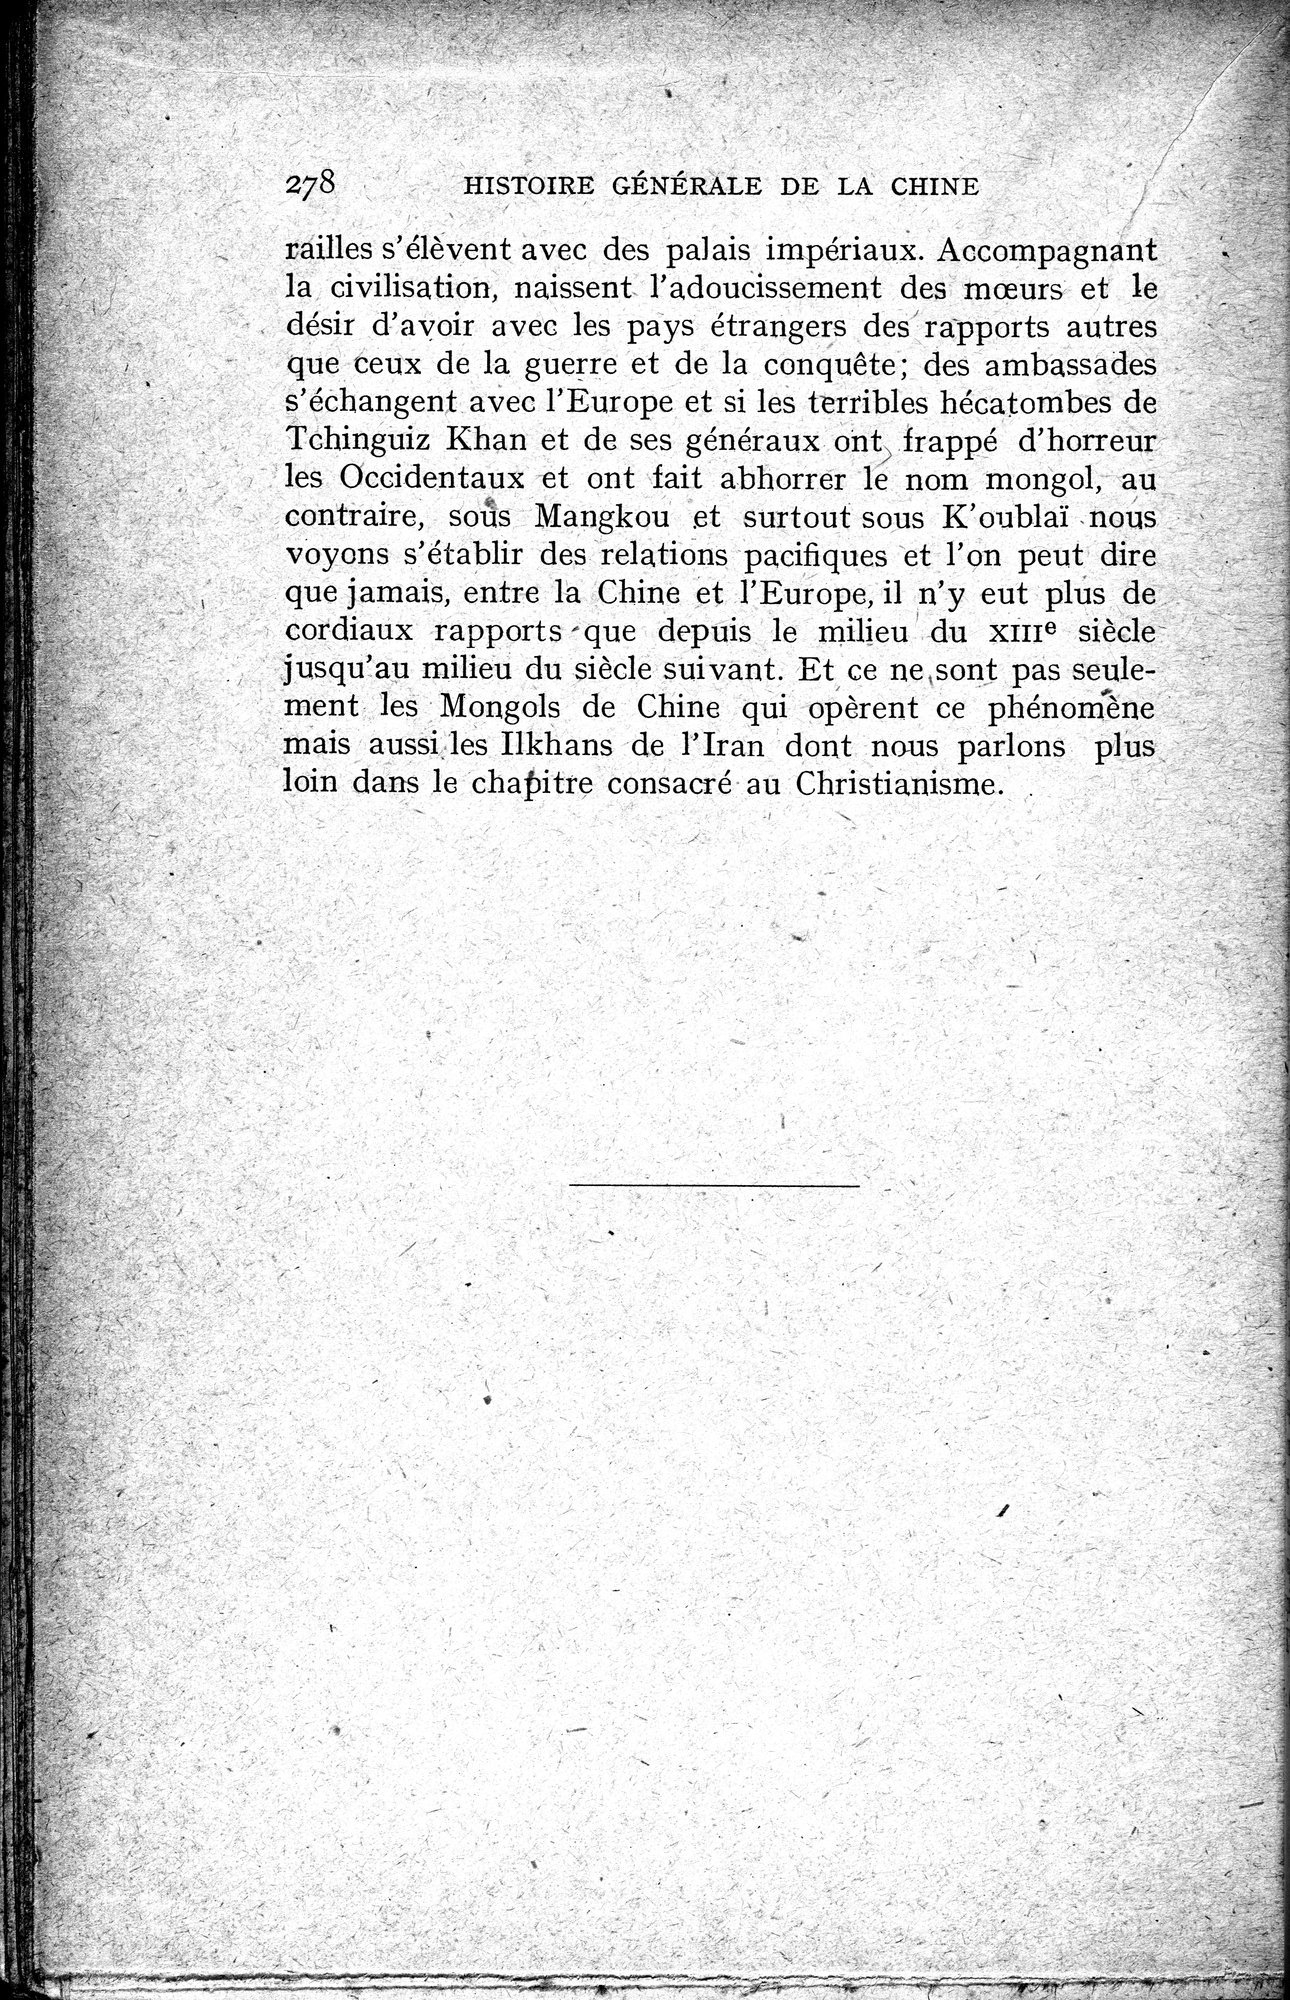 Histoire Générale de la Chine : vol.2 / Page 280 (Grayscale High Resolution Image)